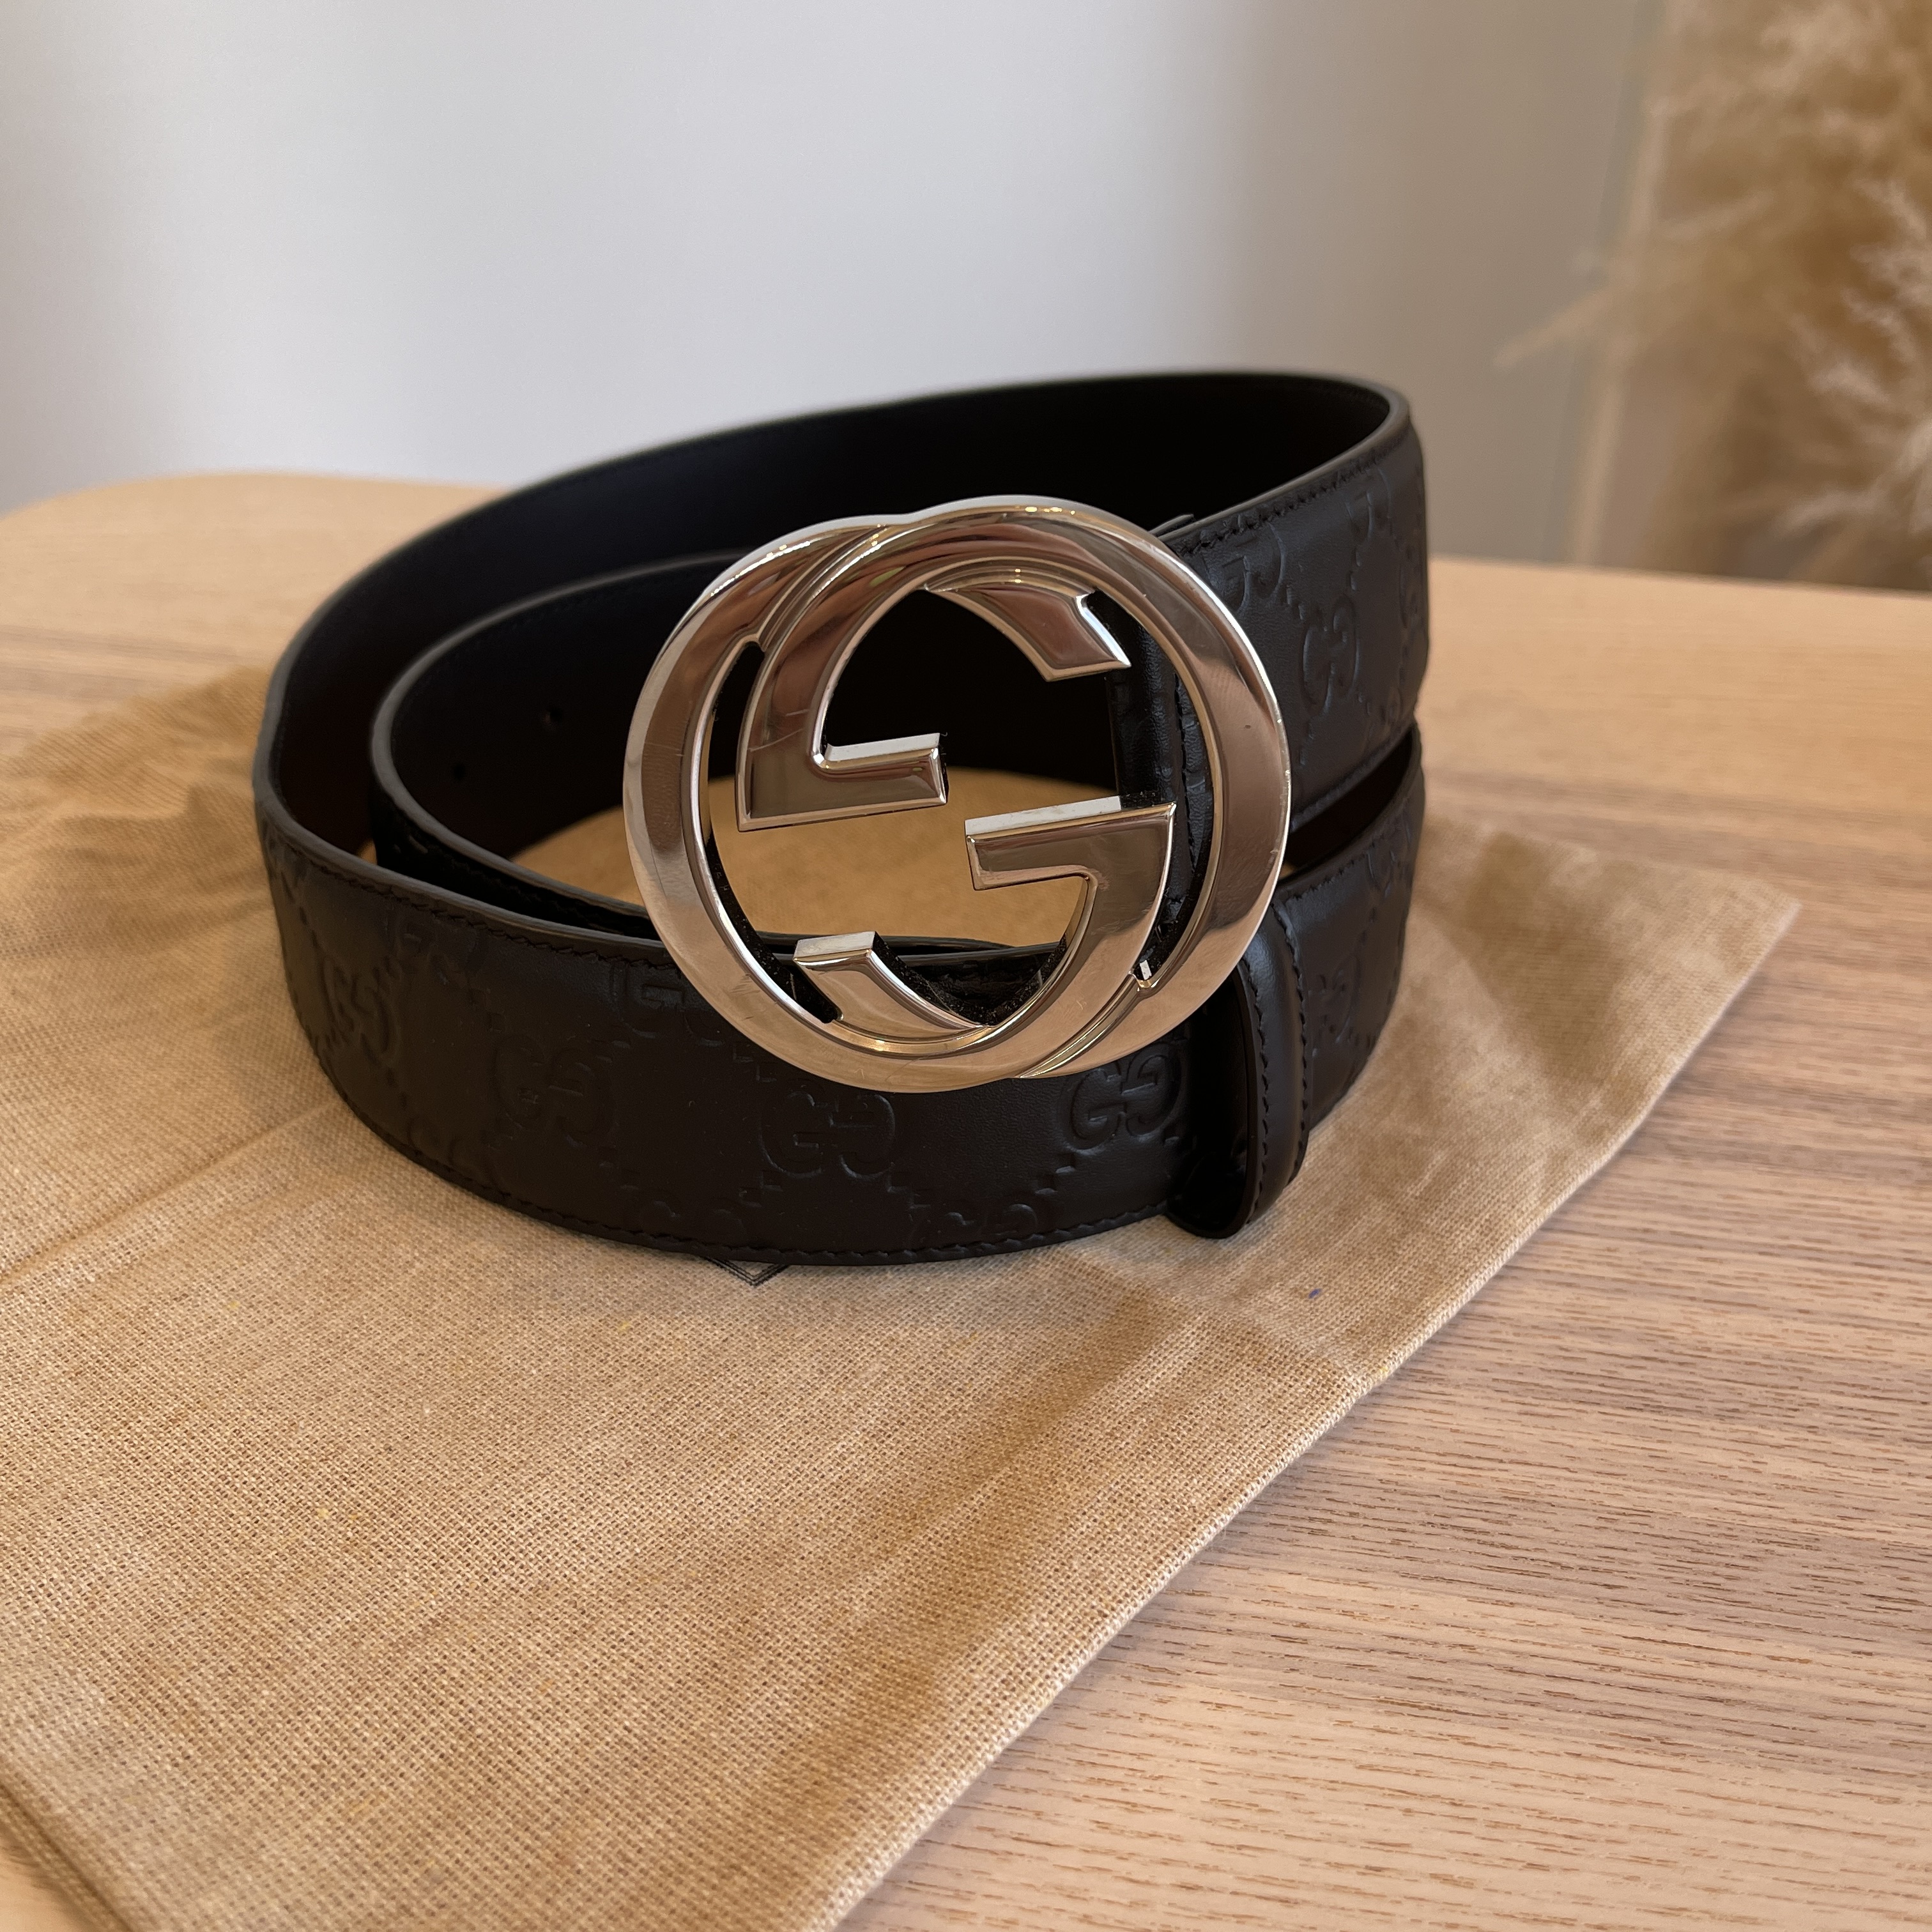 HealthdesignShops, gucci support black leather belt